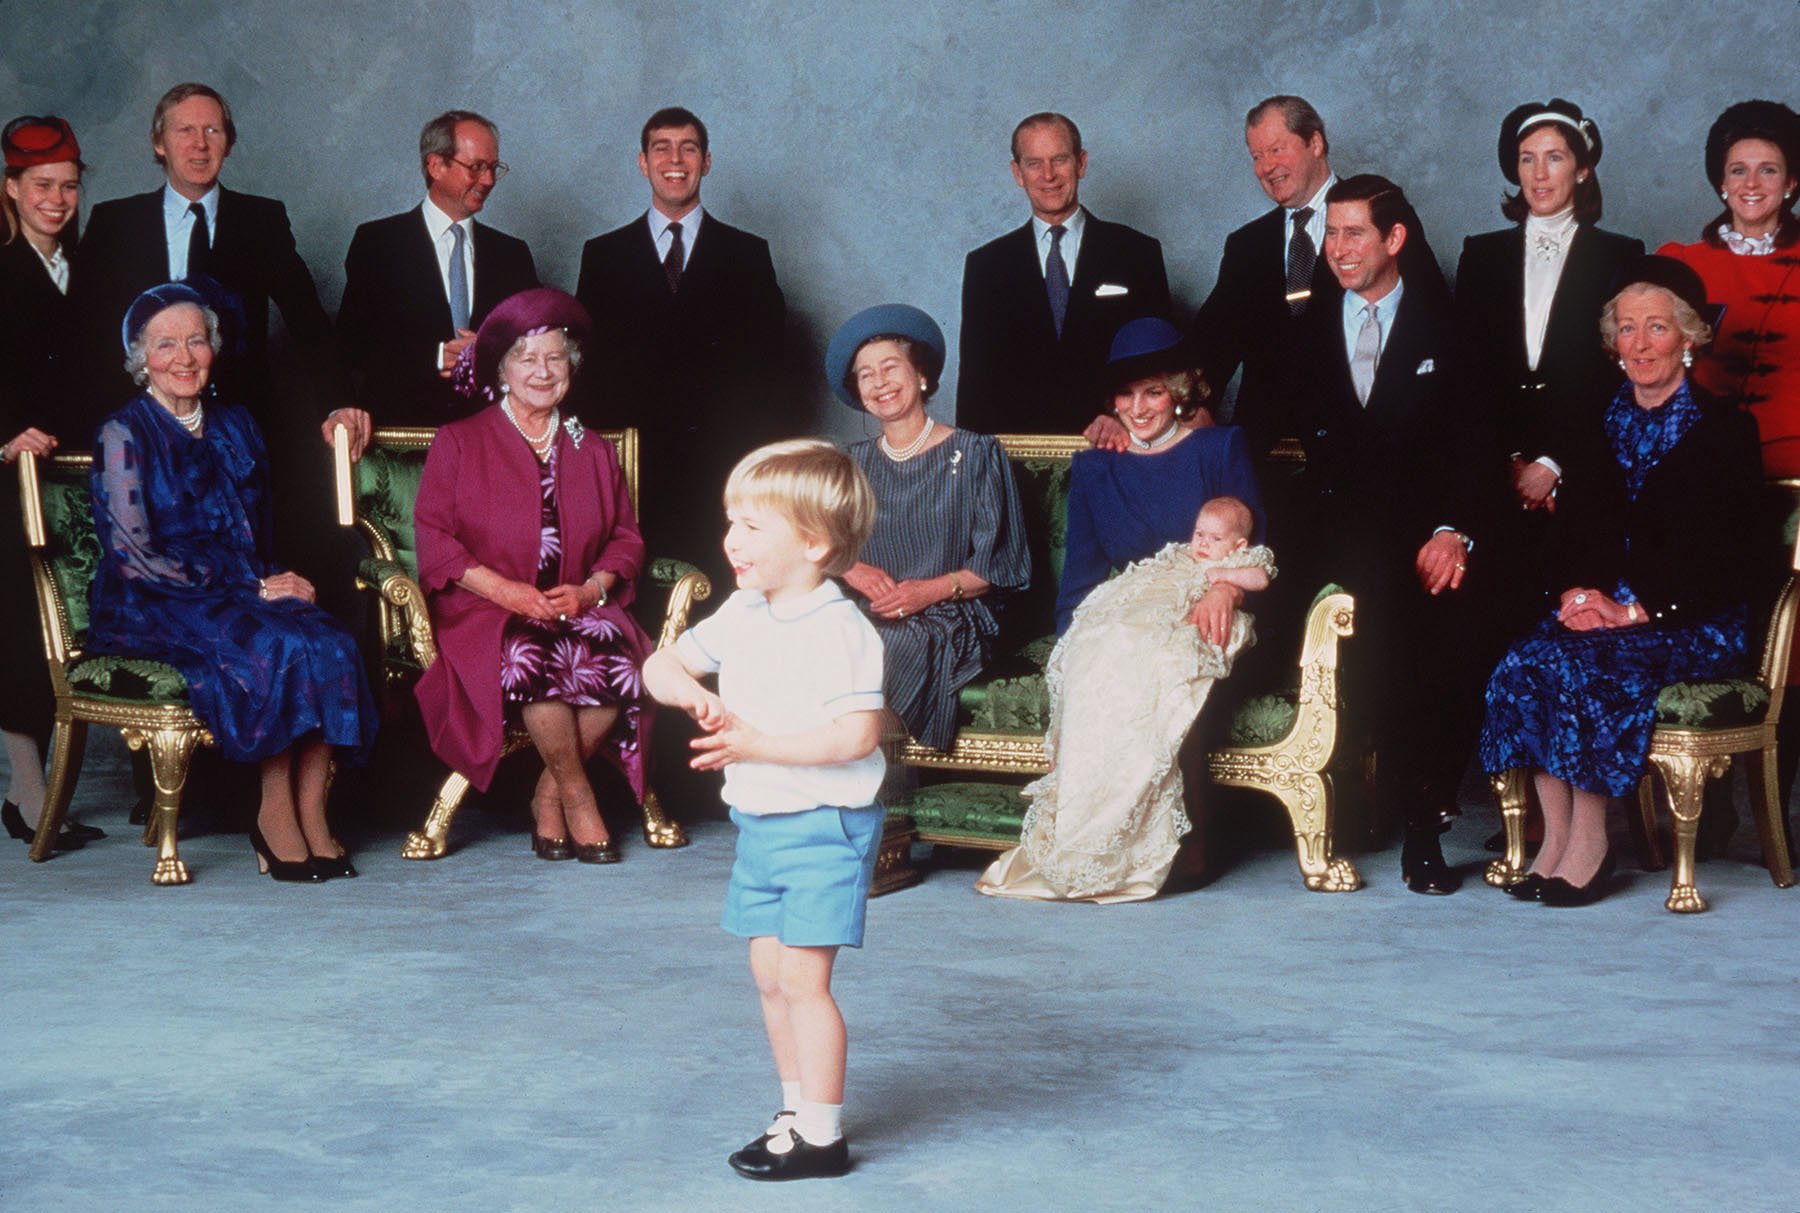 Parientes reales y padrinos que se divierten con las travesuras del joven Príncipe William, el Príncipe Harry es bautizado en el Castillo de Windsor, el 21 de diciembre de 1984 en Windsor, Inglaterra. |Imagen: Getty images